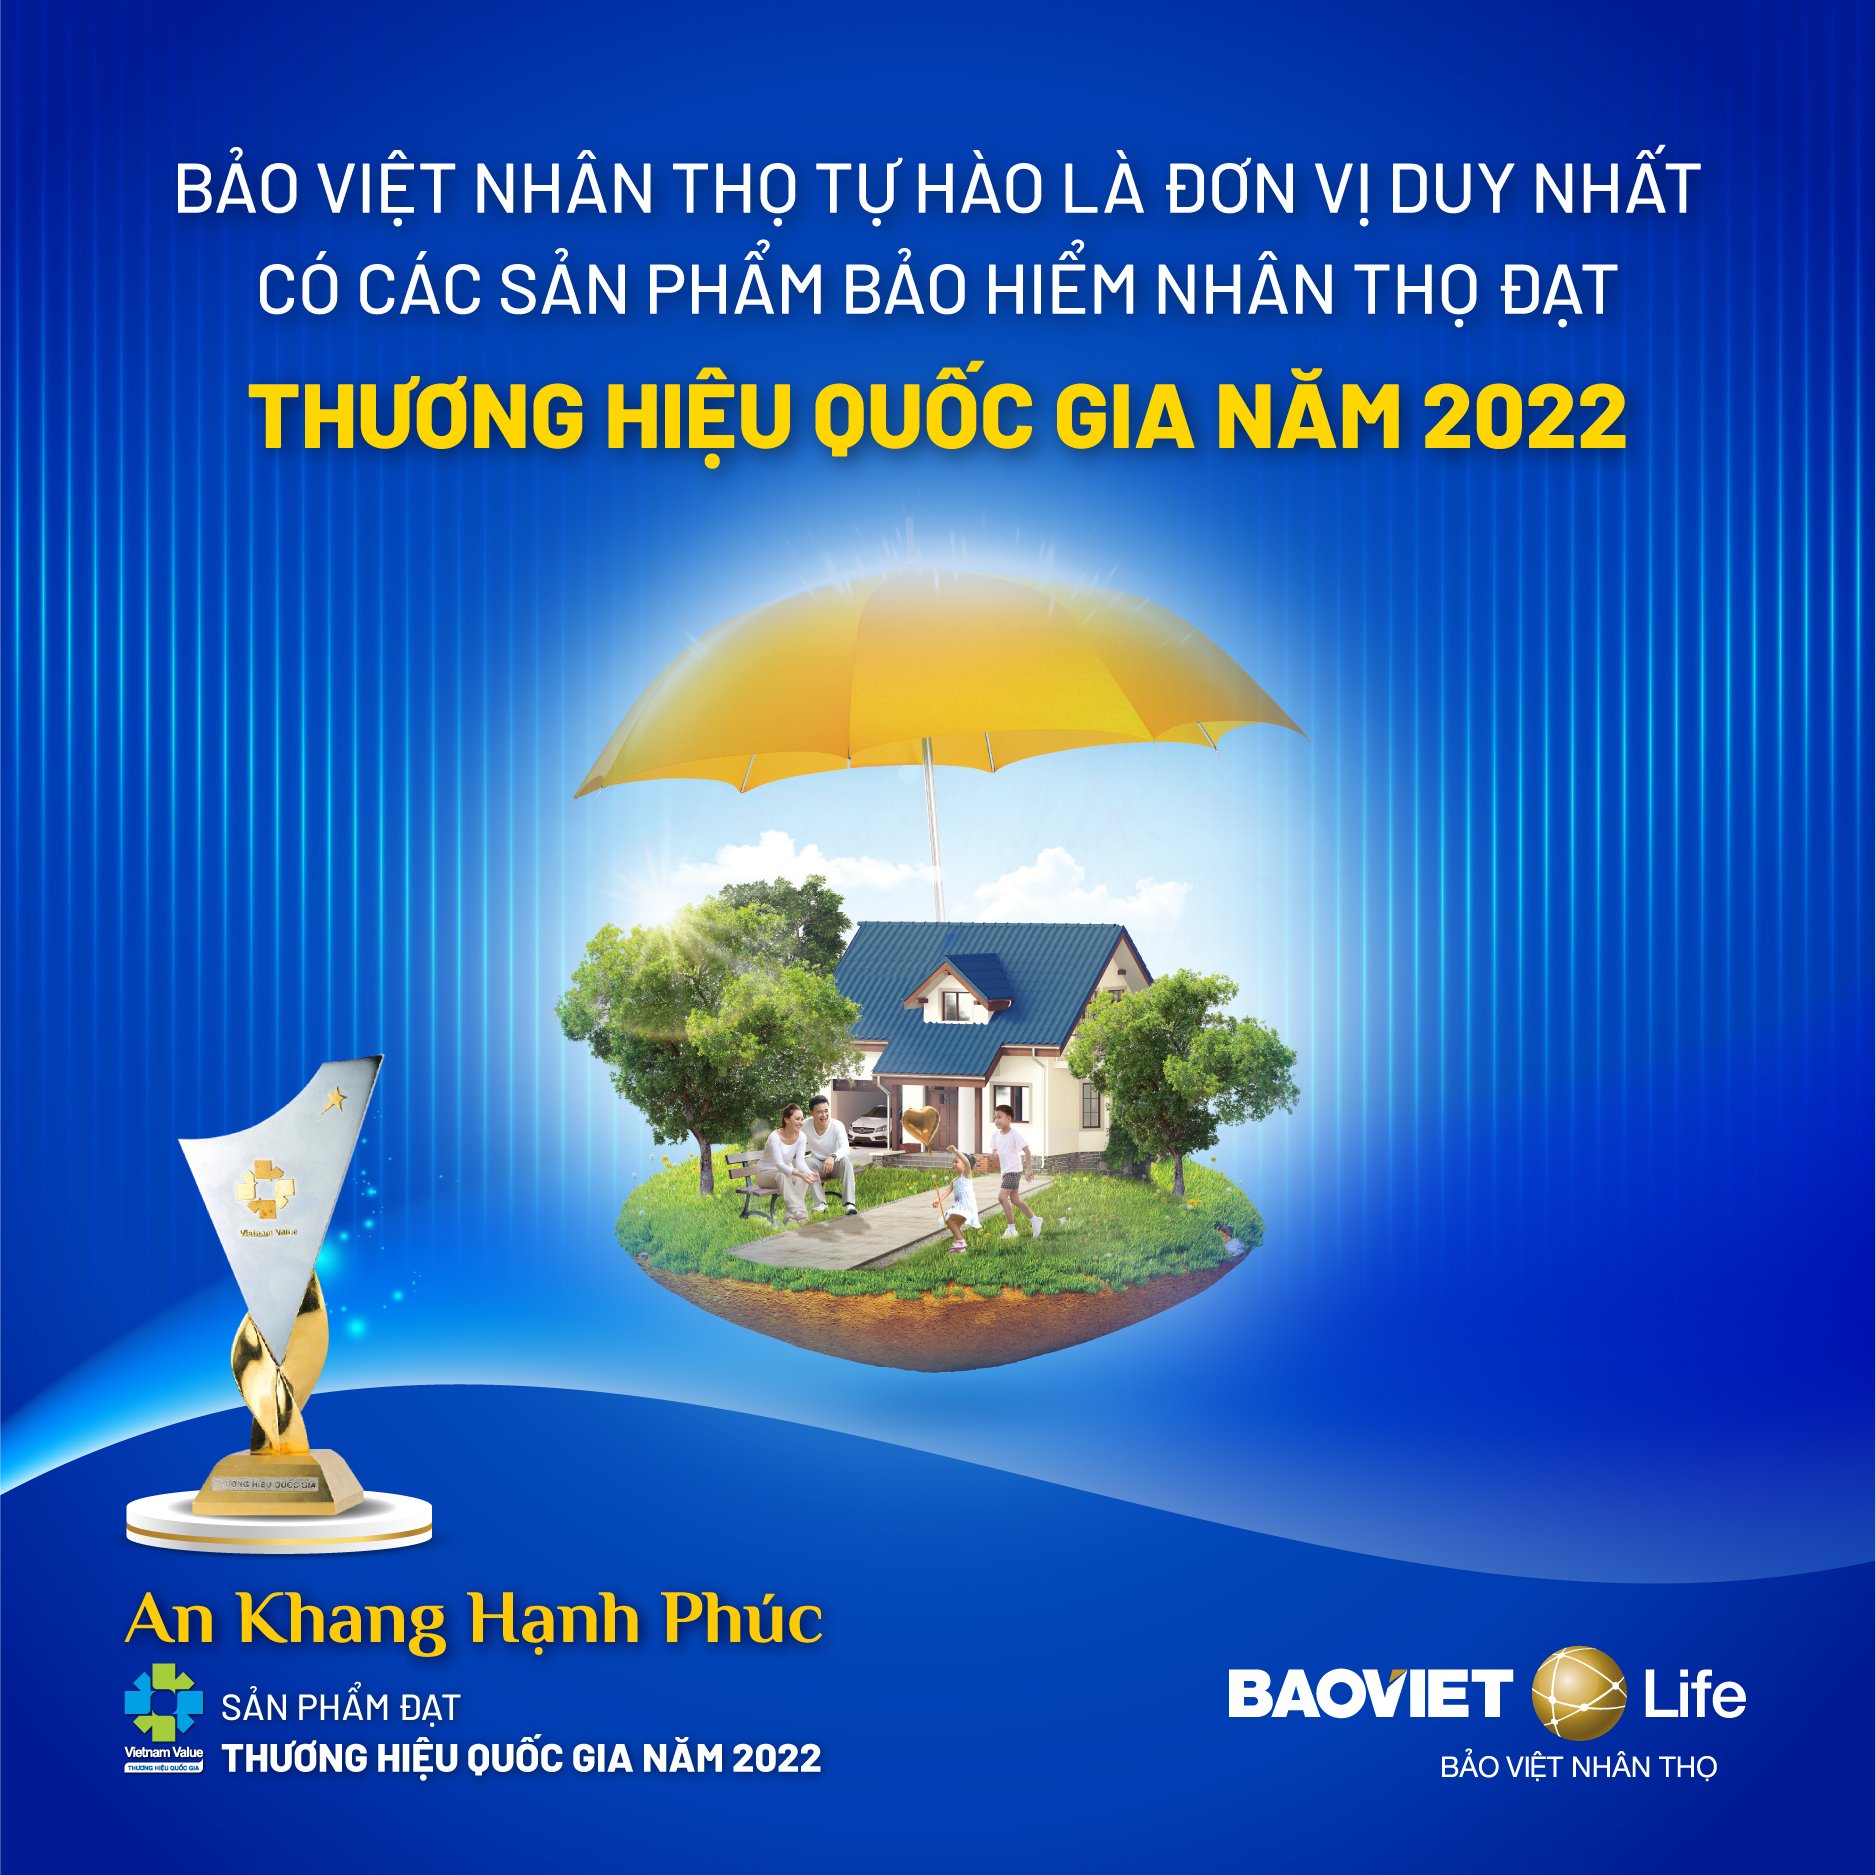 Sản phẩm của Tổng Công ty Bảo Việt Nhân thọ đạt danh hiệu Thương hiệu Quốc gia năm 2022 - Ảnh 2.